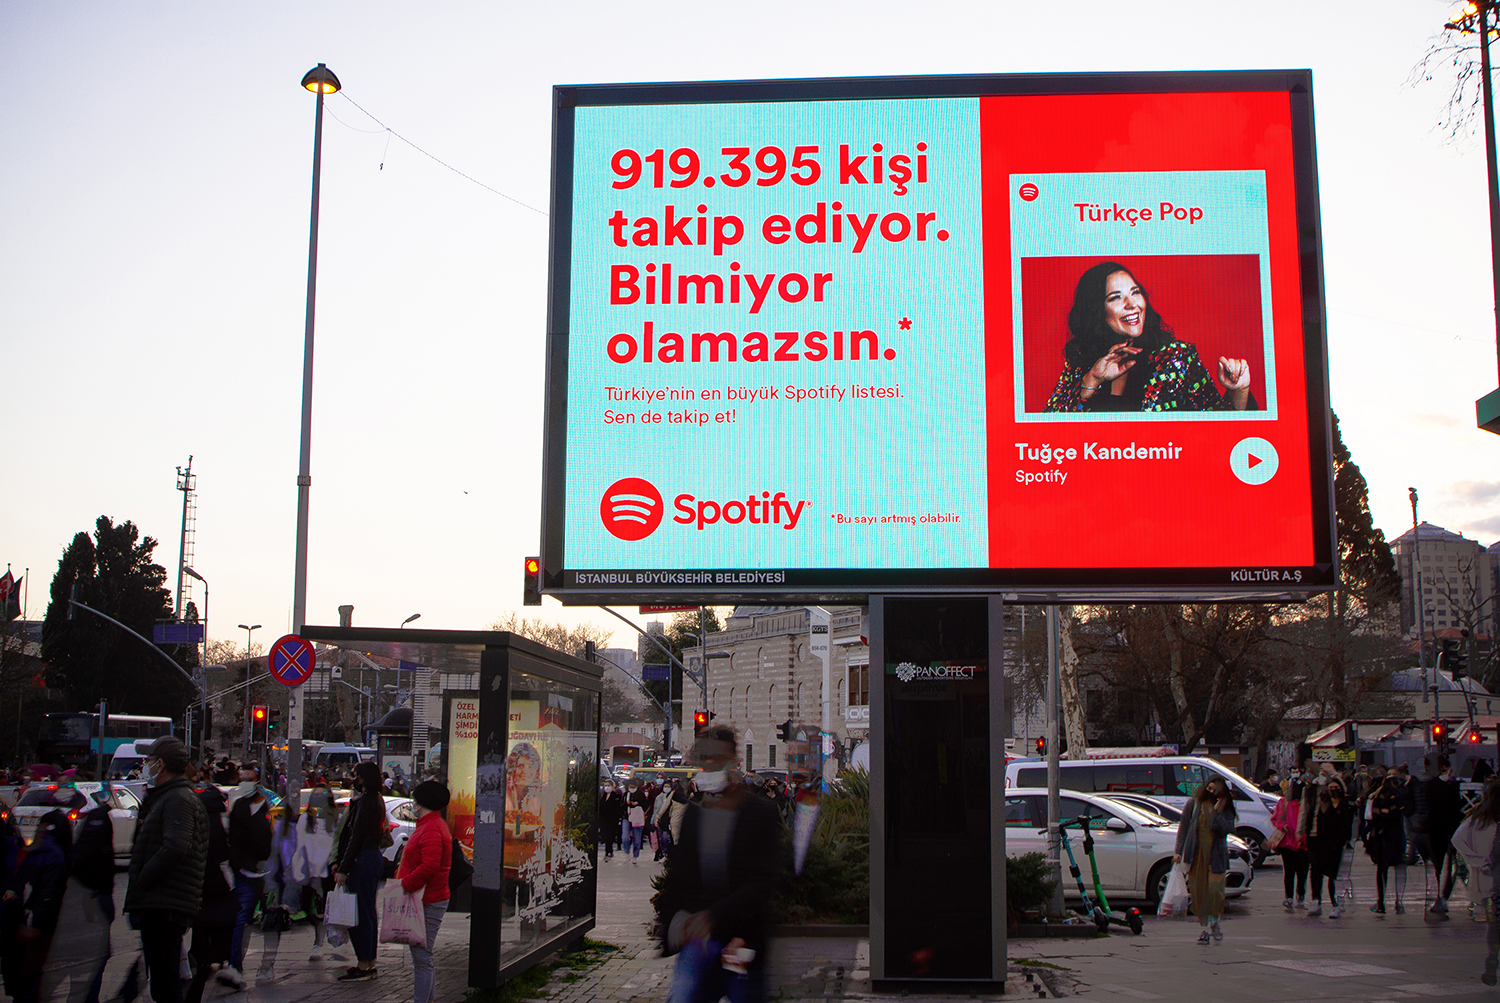 Spotify_TR_OOH_TurkcePop_Besiktas_TugceKandemir_01